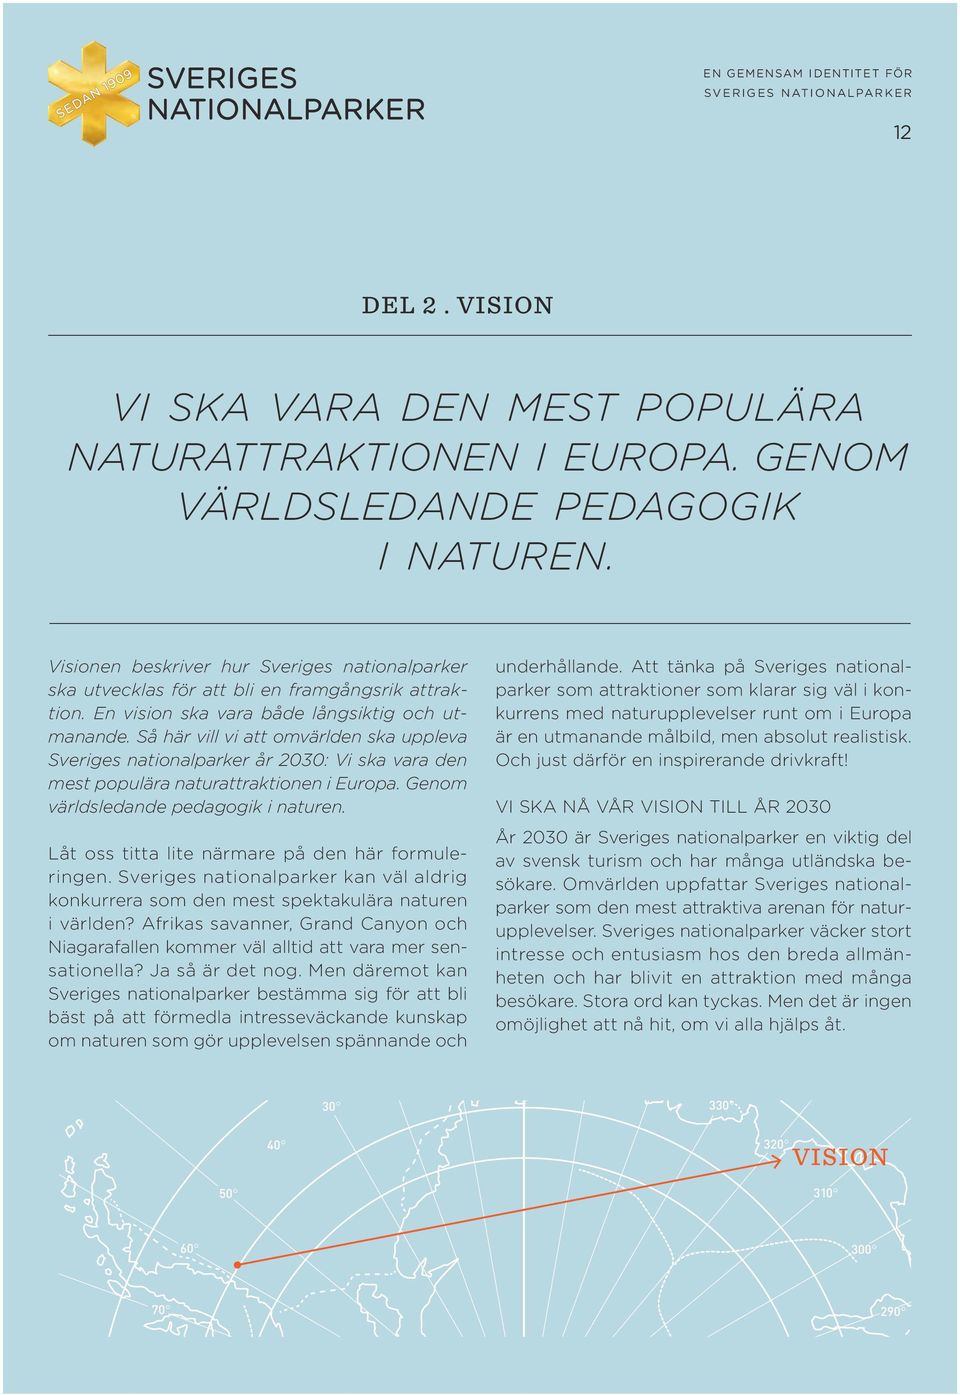 Så här vill vi att omvärlden ska uppleva Sveriges nationalparker år 2030: Vi ska vara den mest populära naturattraktionen i Europa. Genom världsledande pedagogik i naturen.